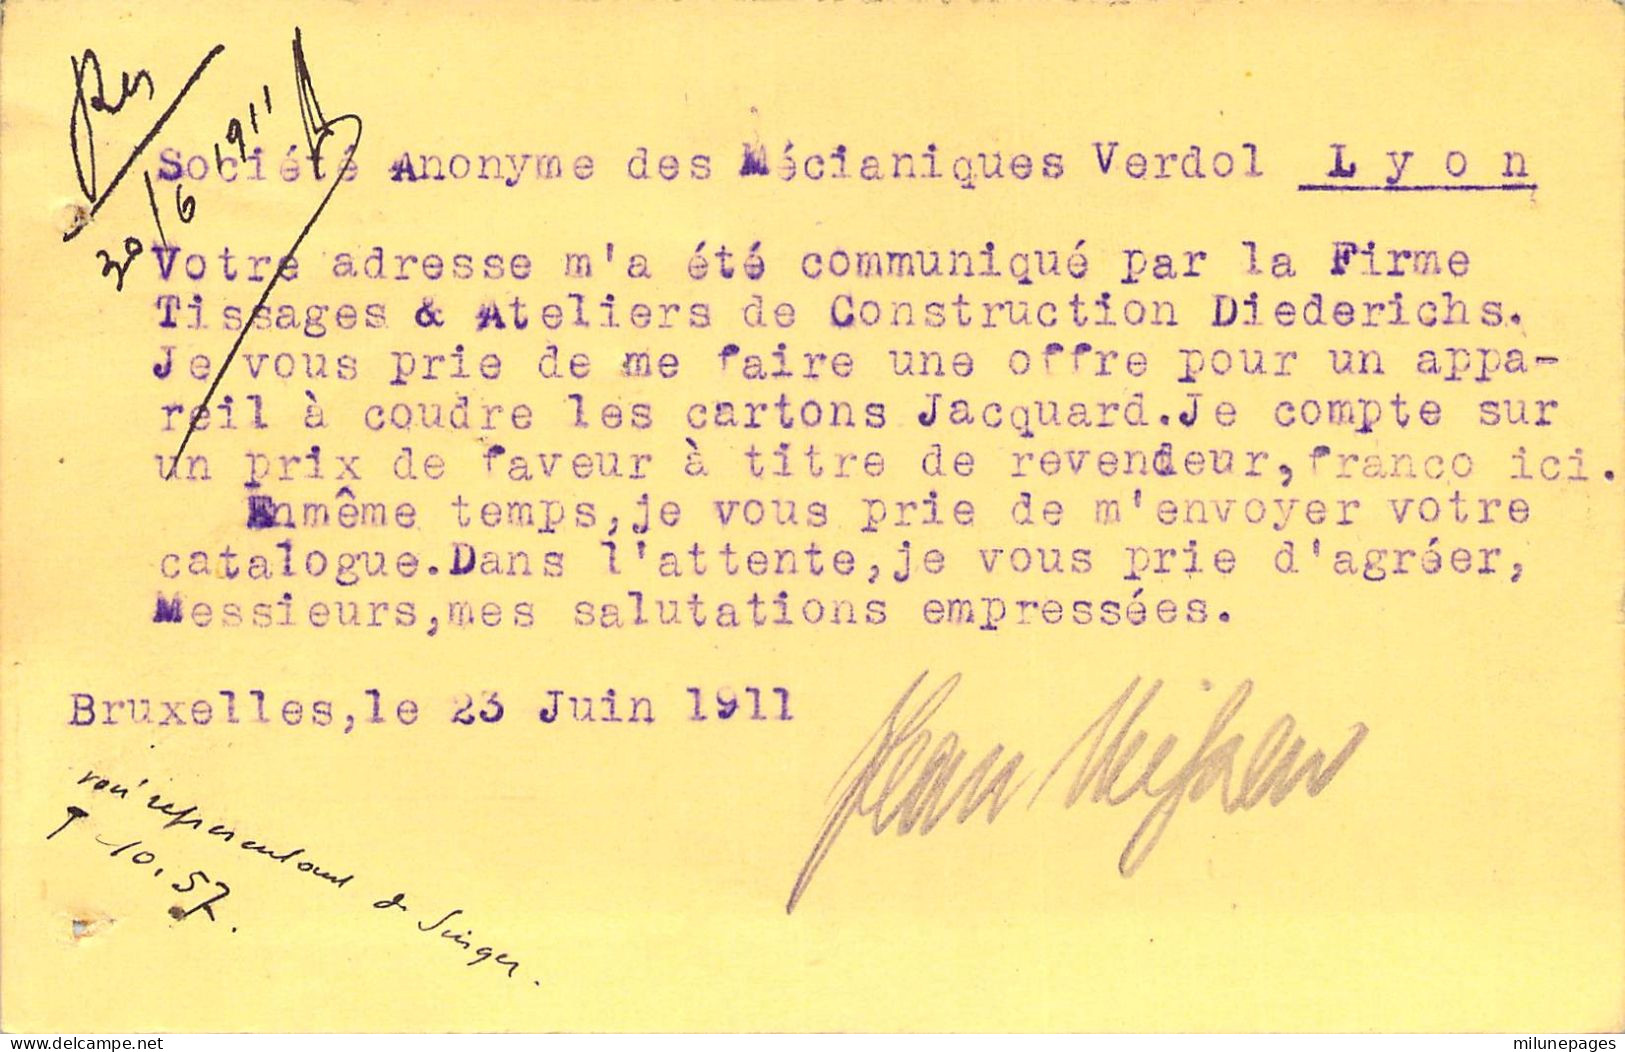 Belgique Belgie Carte Postale Privée Illustrée D'un Appareil De Mesure De L'Ingénieur Jean Niessen De Bruxelles 1911 - Ambachten